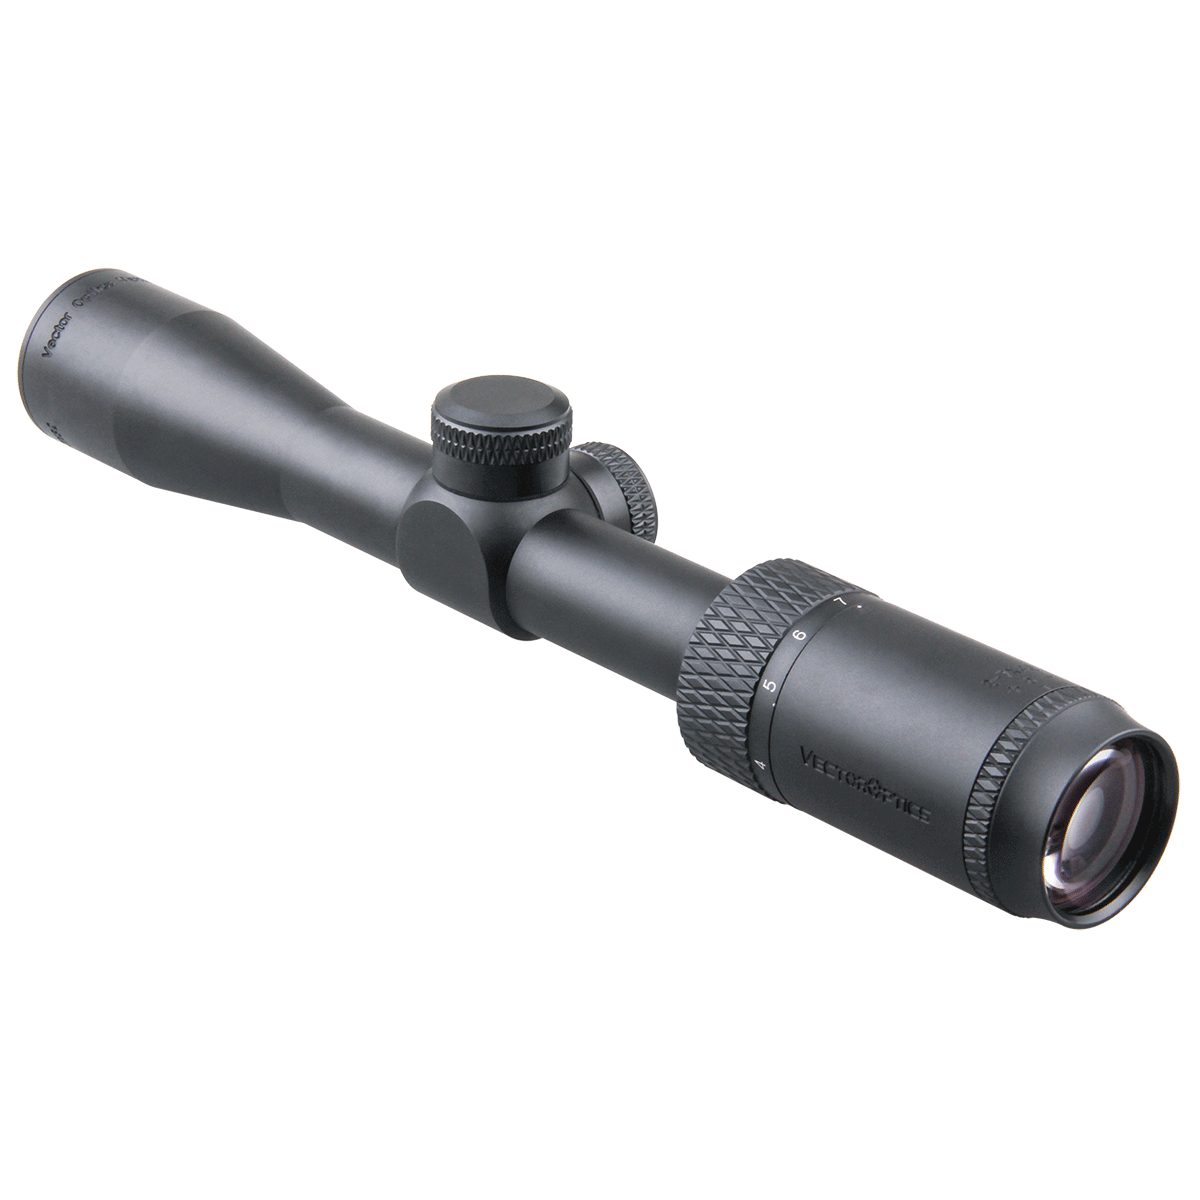 Matiz 2-7x32 Riflescope